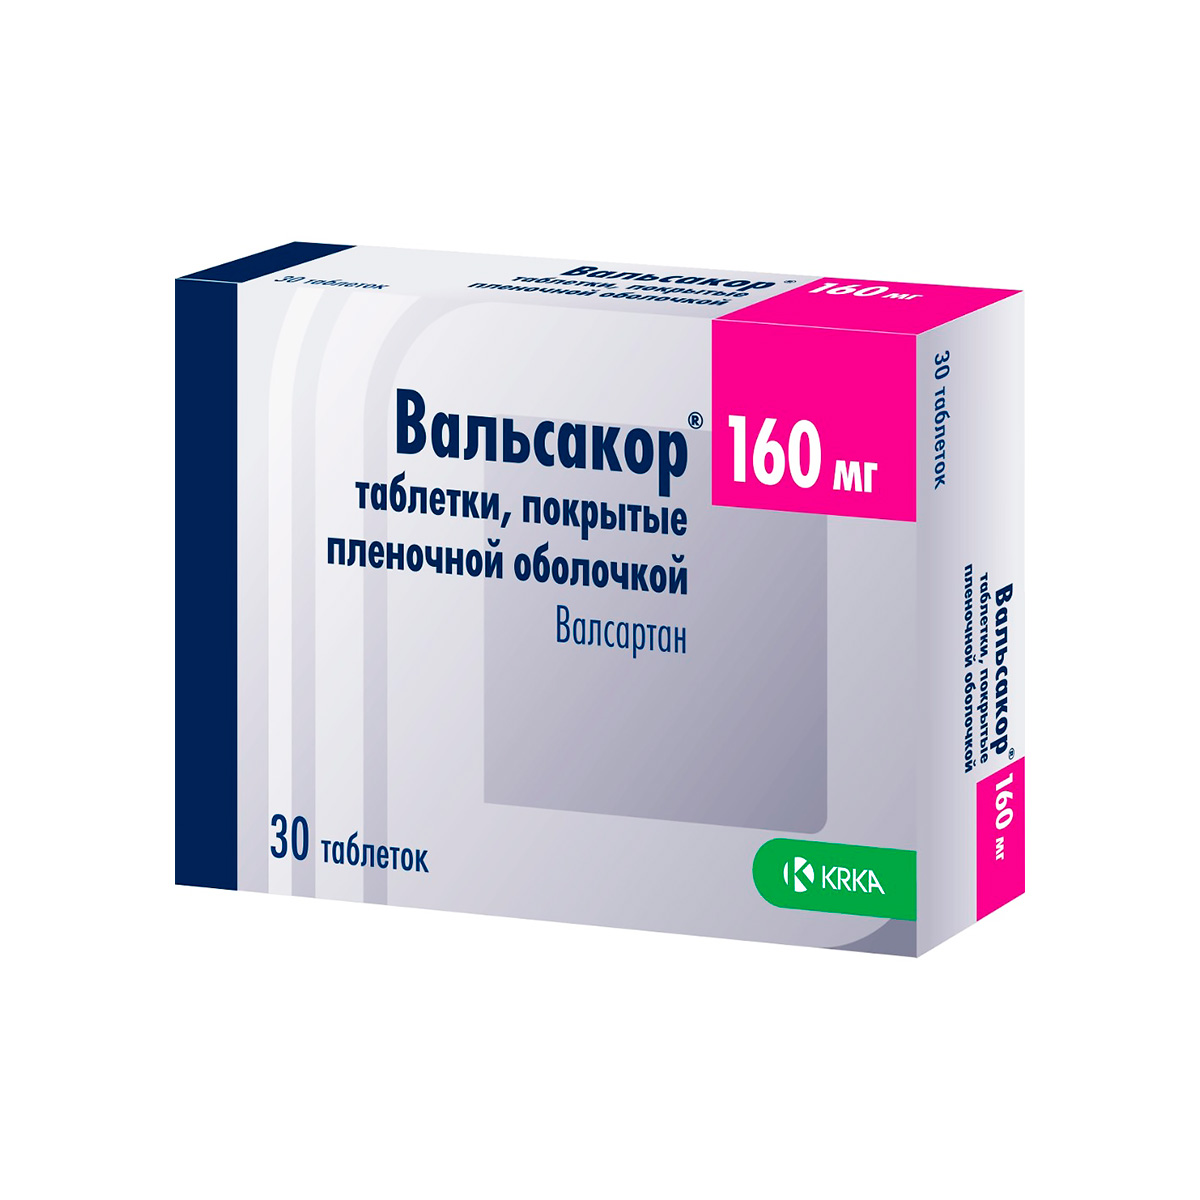 Вальсакор 160 мг таблетки покрытые пленочной оболочкой 30 шт